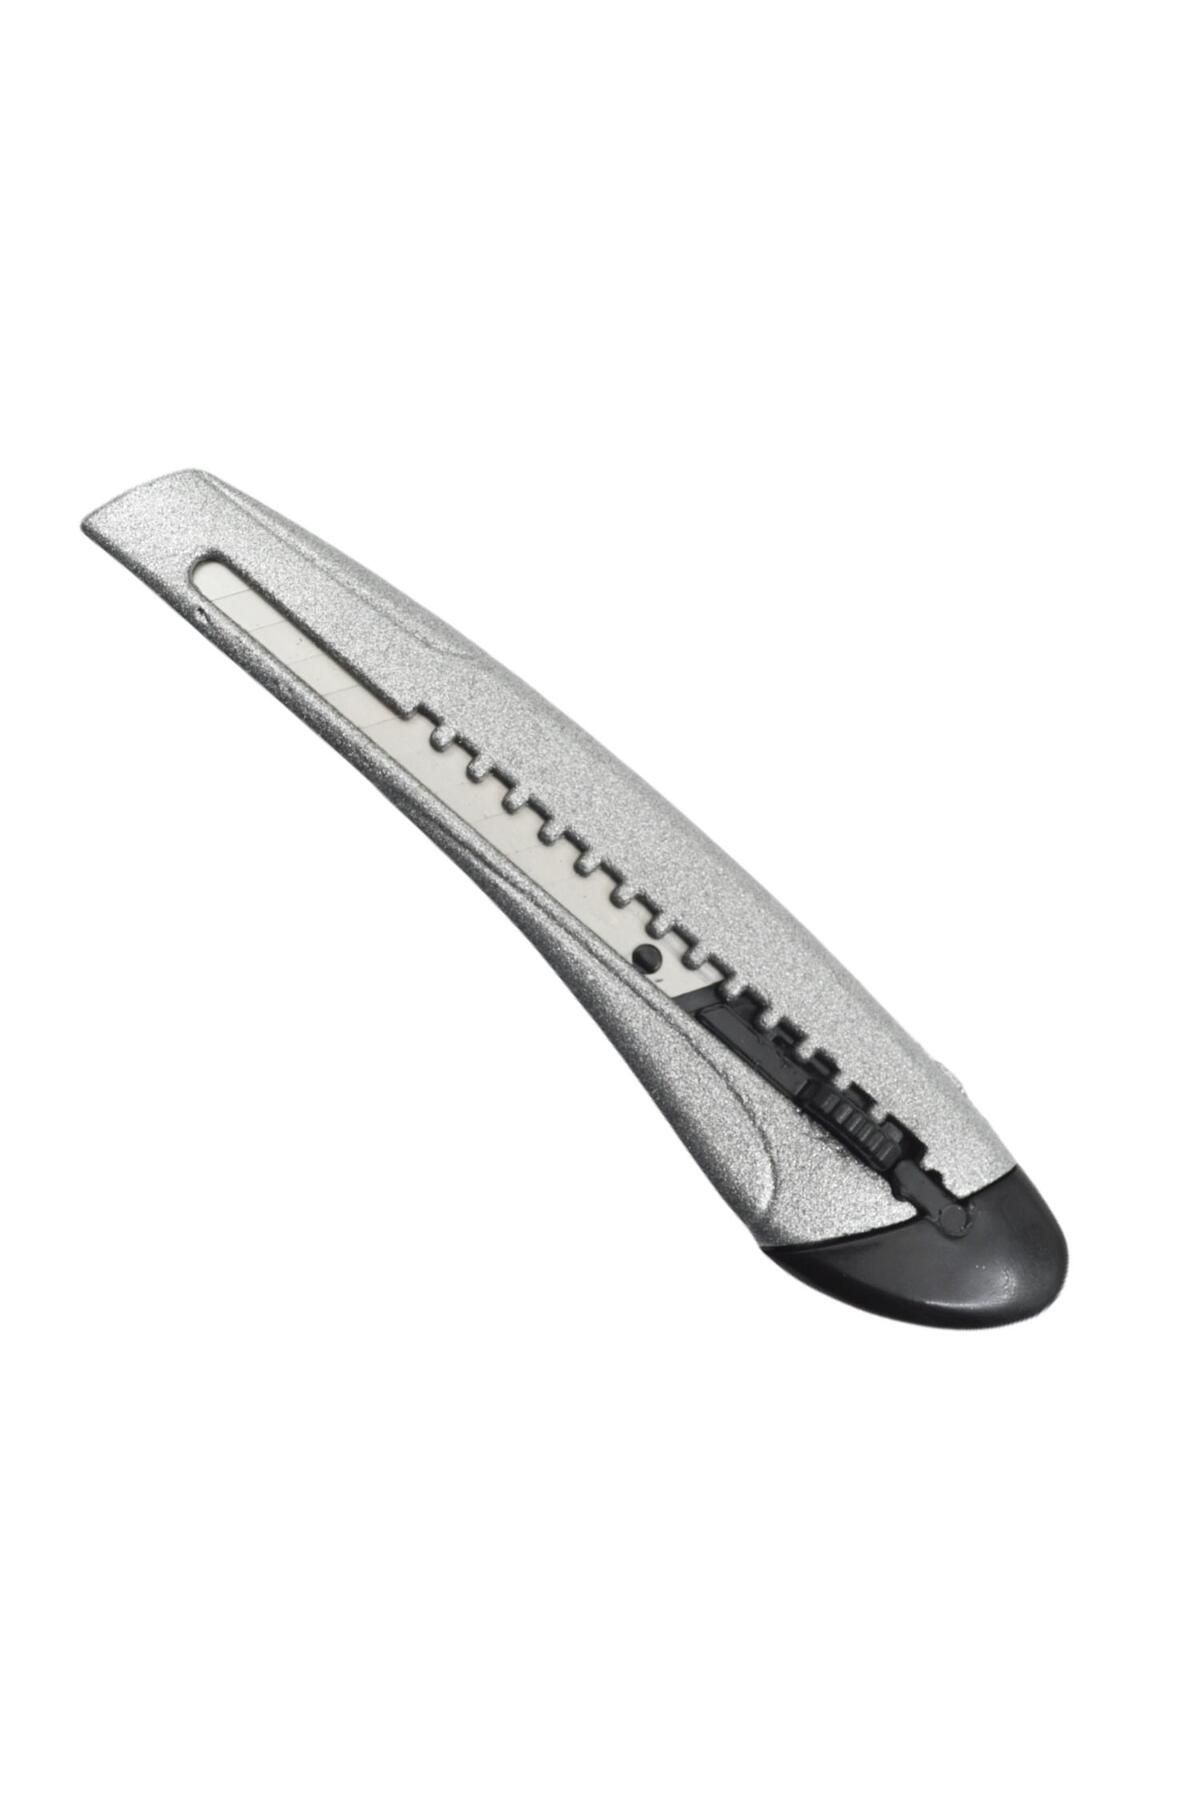 Linea Mimaks Metal Dar Maket Bıçağı 9 mm HC-10